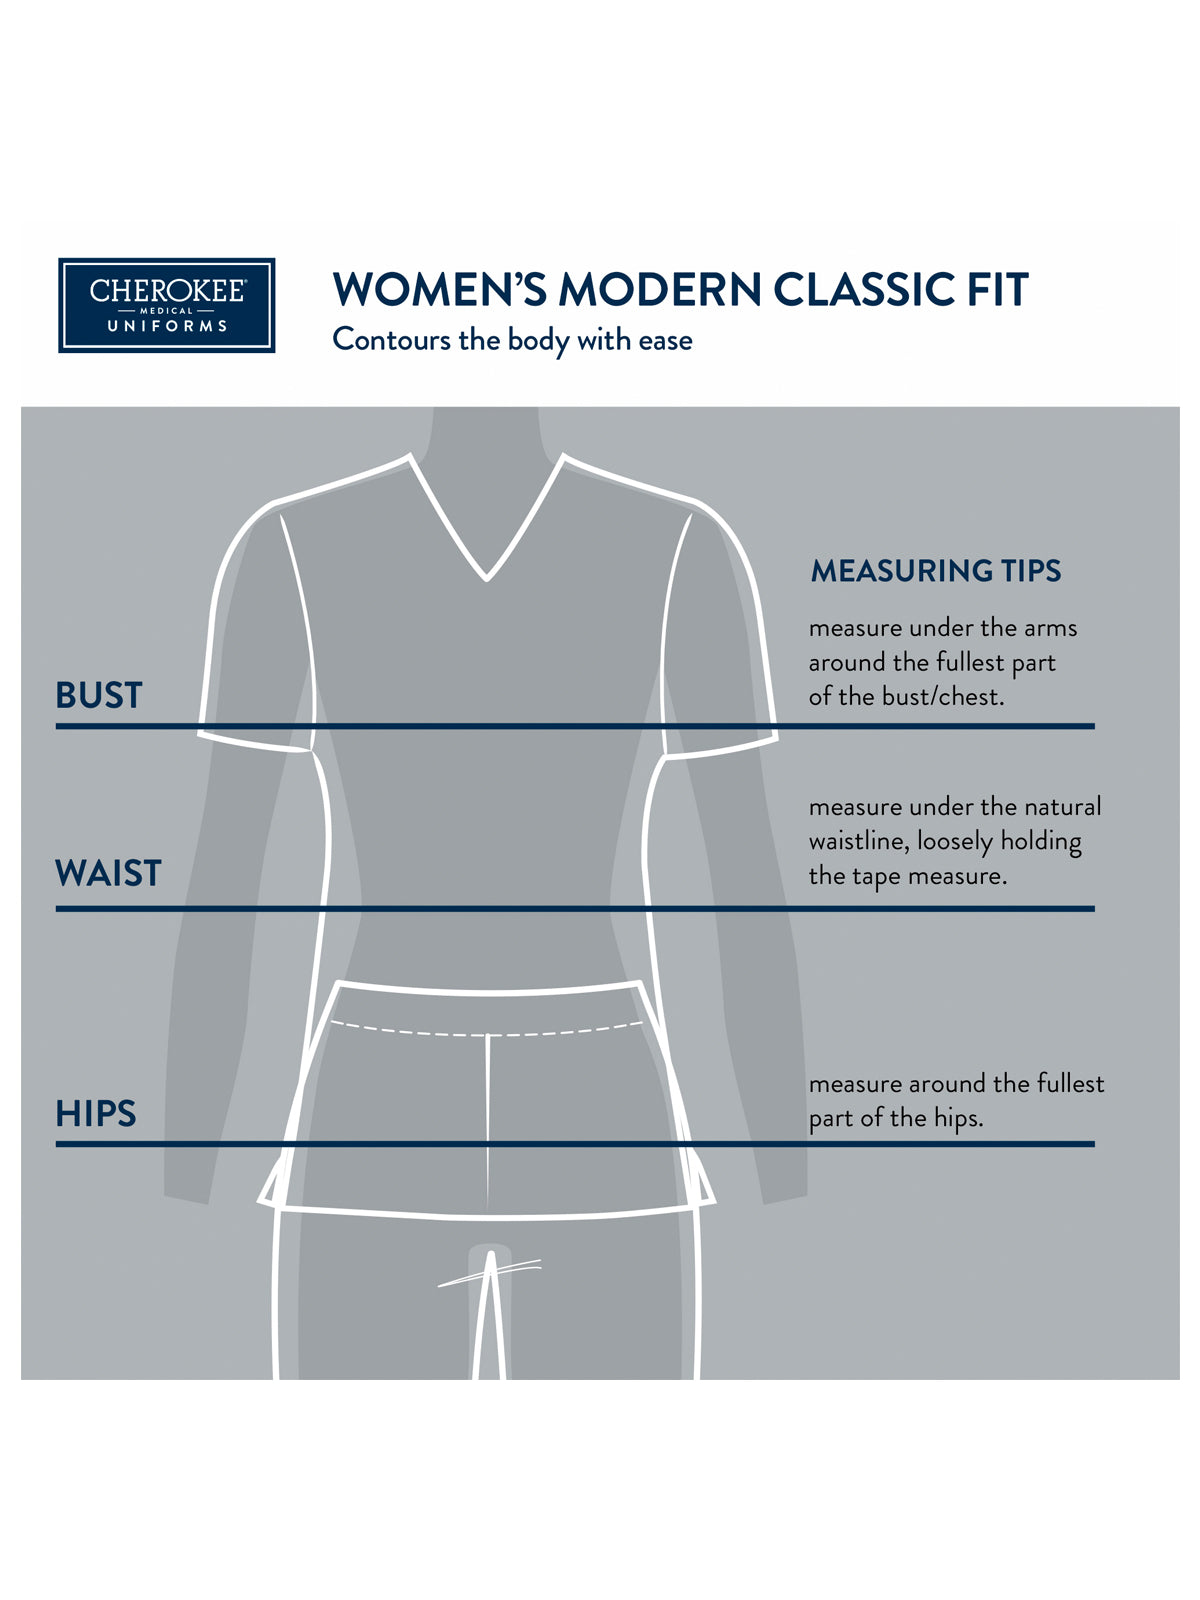 Women's 4-Pocket Drawstring Cargo Pant